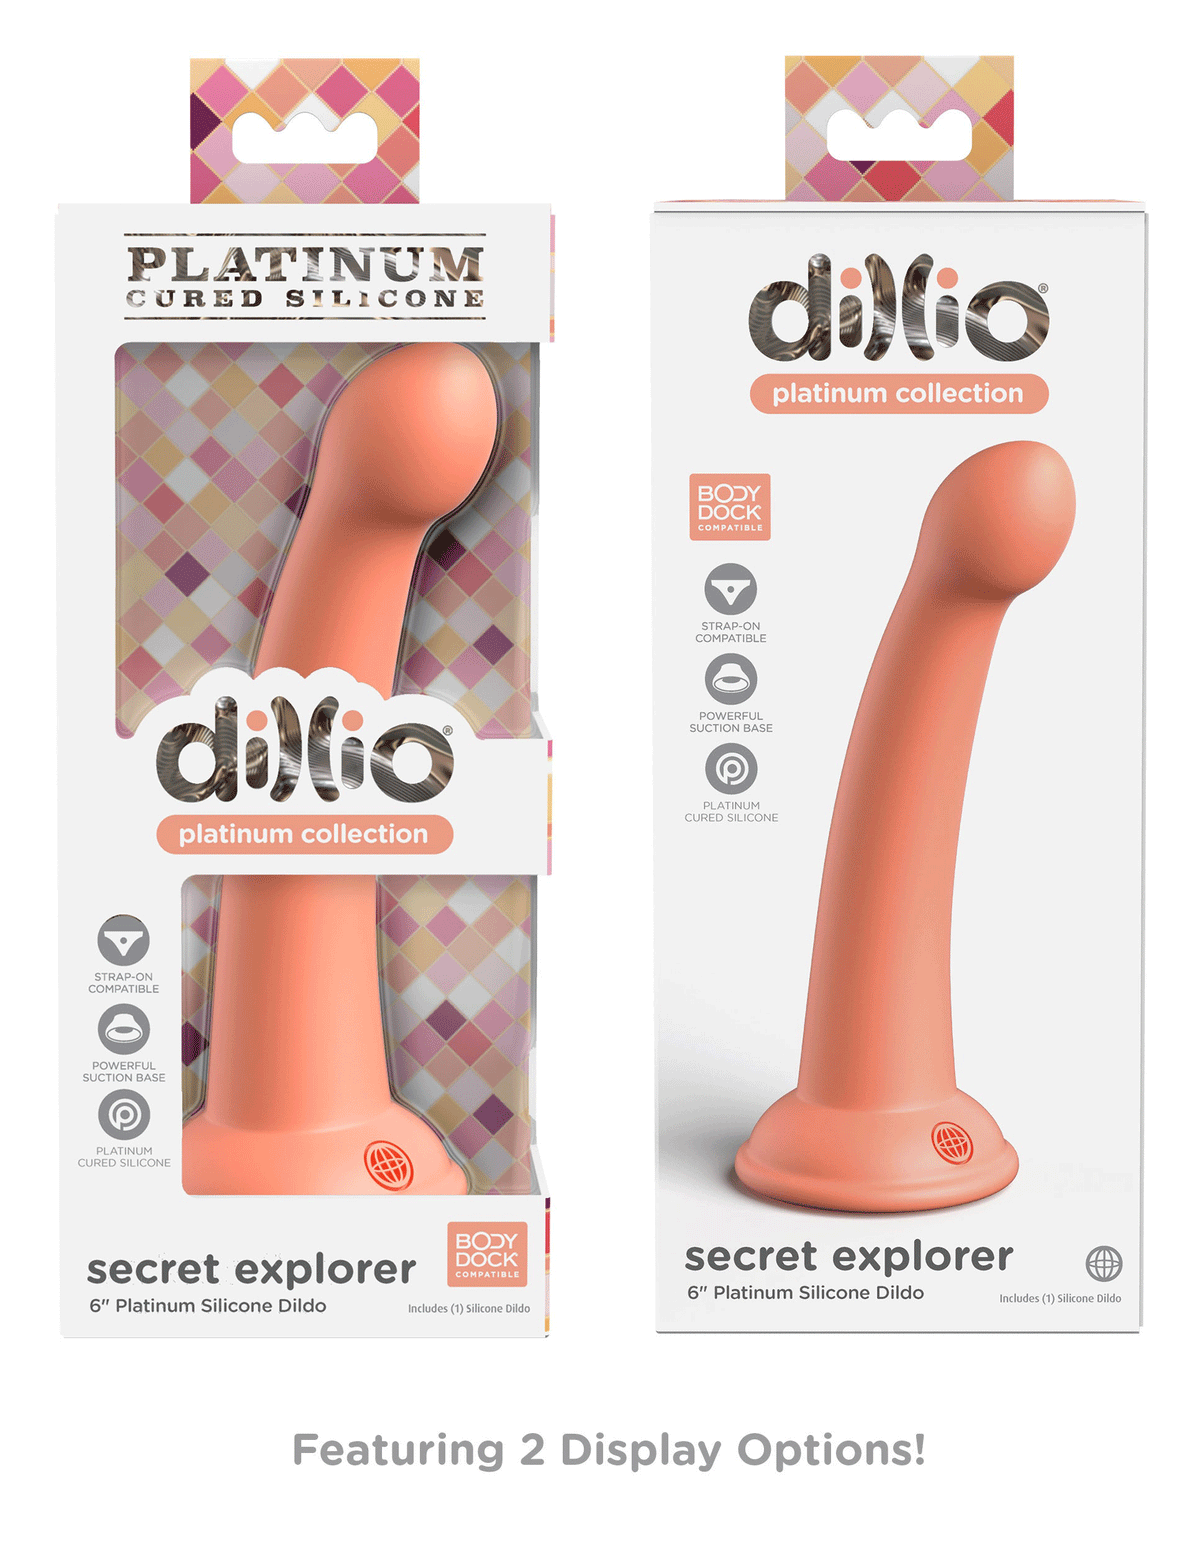 dillio platinum secret explorer 6 inch dildo peach